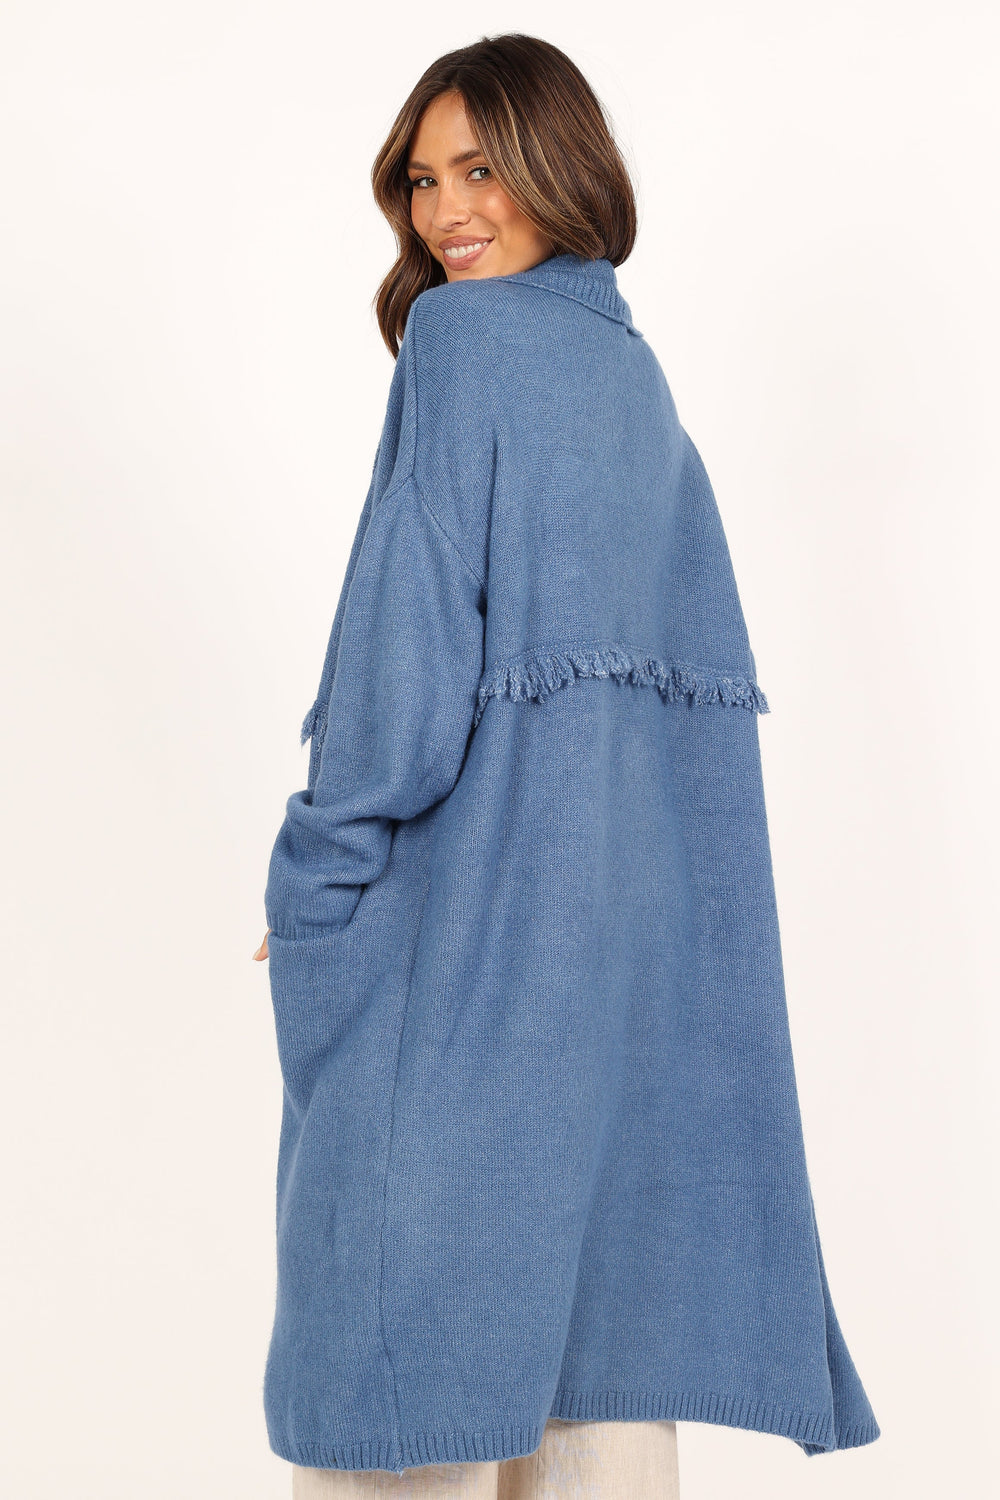 Knitwear @Erin Fringe Detail Open Front Cardigan - Denim Blue